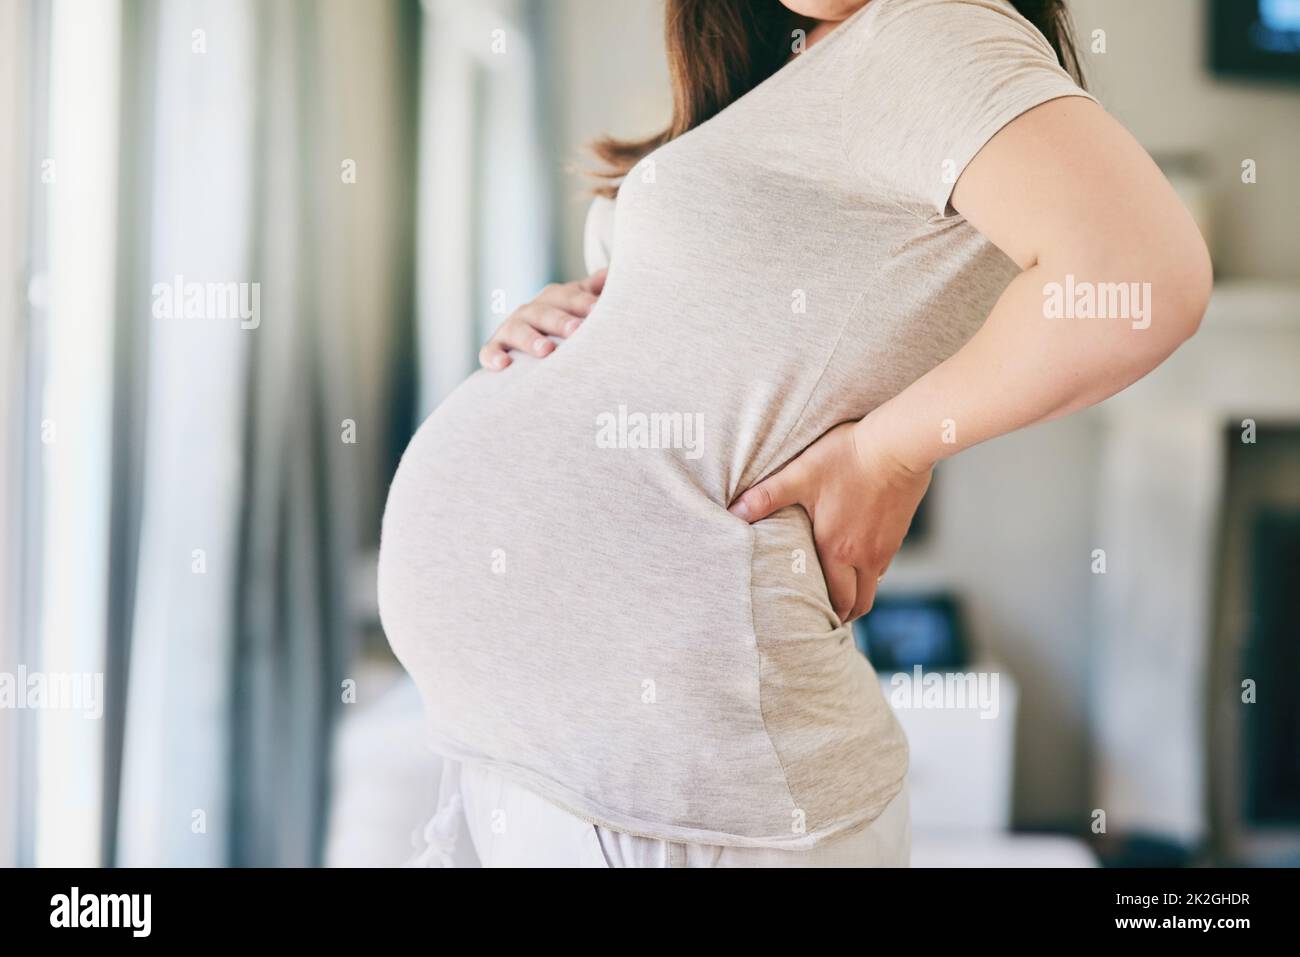 Todavía es tan surrealista. Disparo recortado de una mujer joven posando con su vientre embarazada. Foto de stock